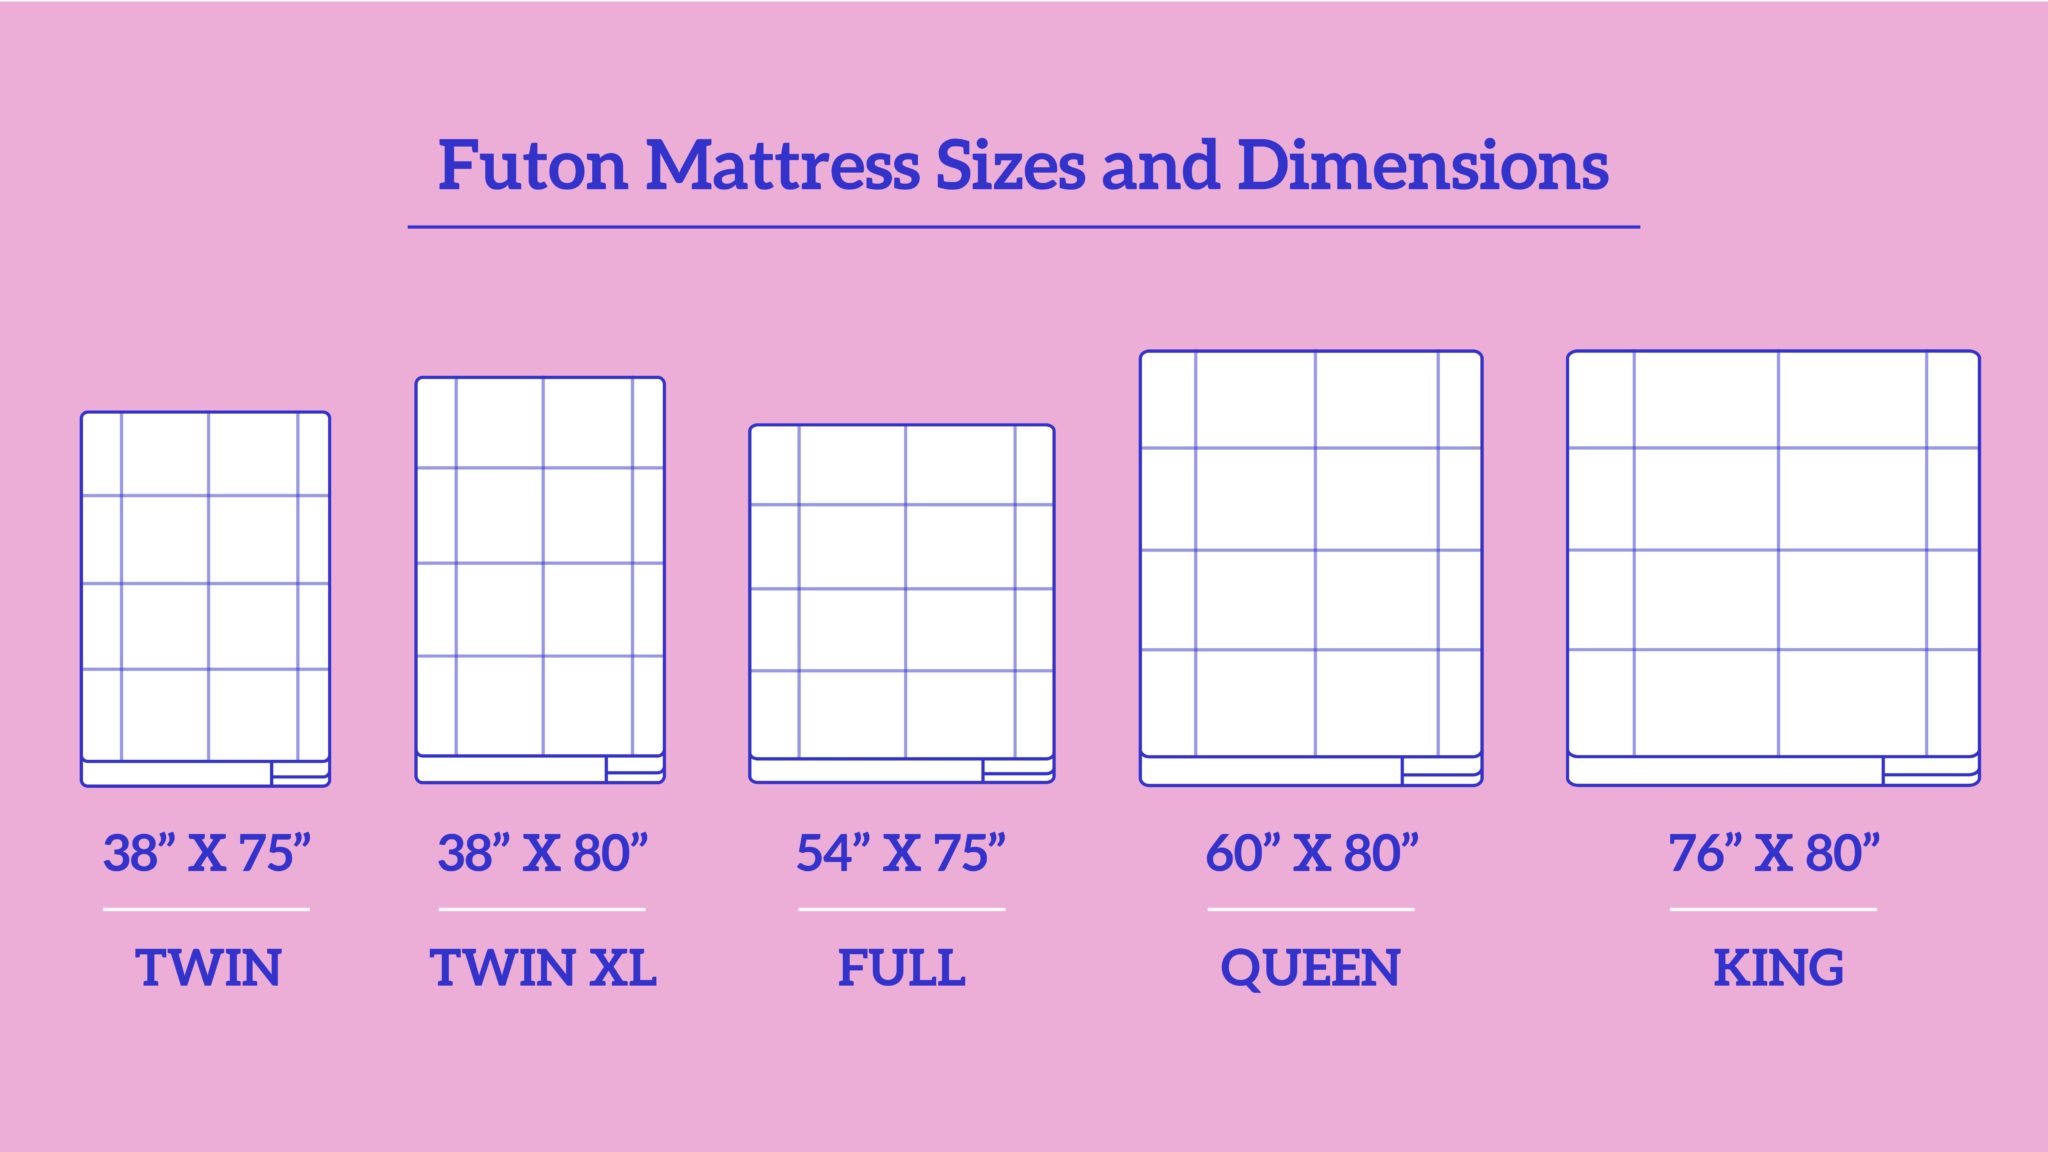 sizes of futon mattresses